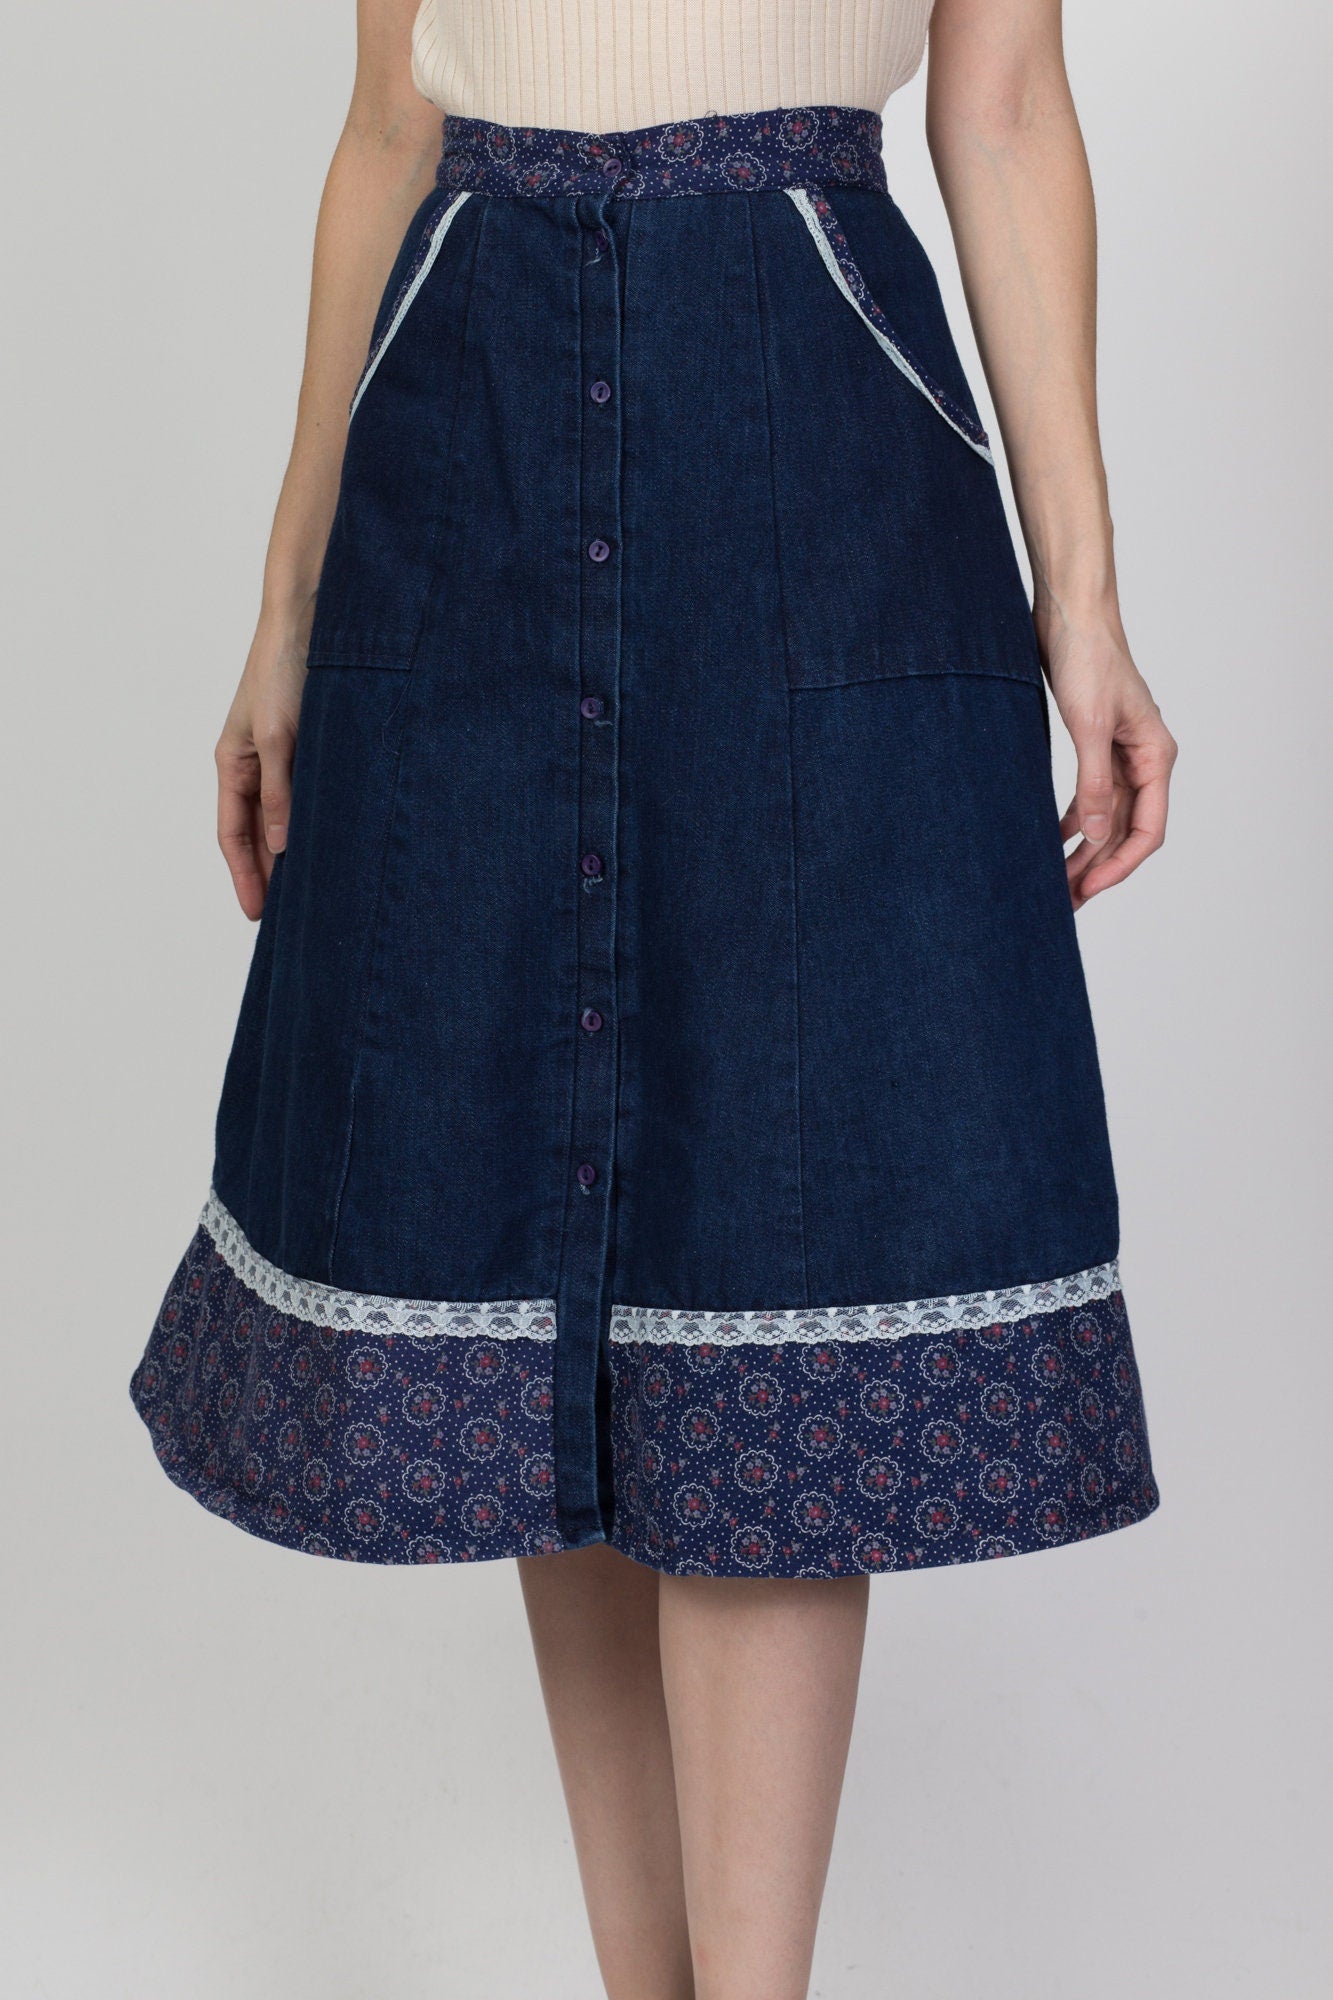 70s Boho Denim Floral Lace Trim Skirt - Extra Small, 24" 